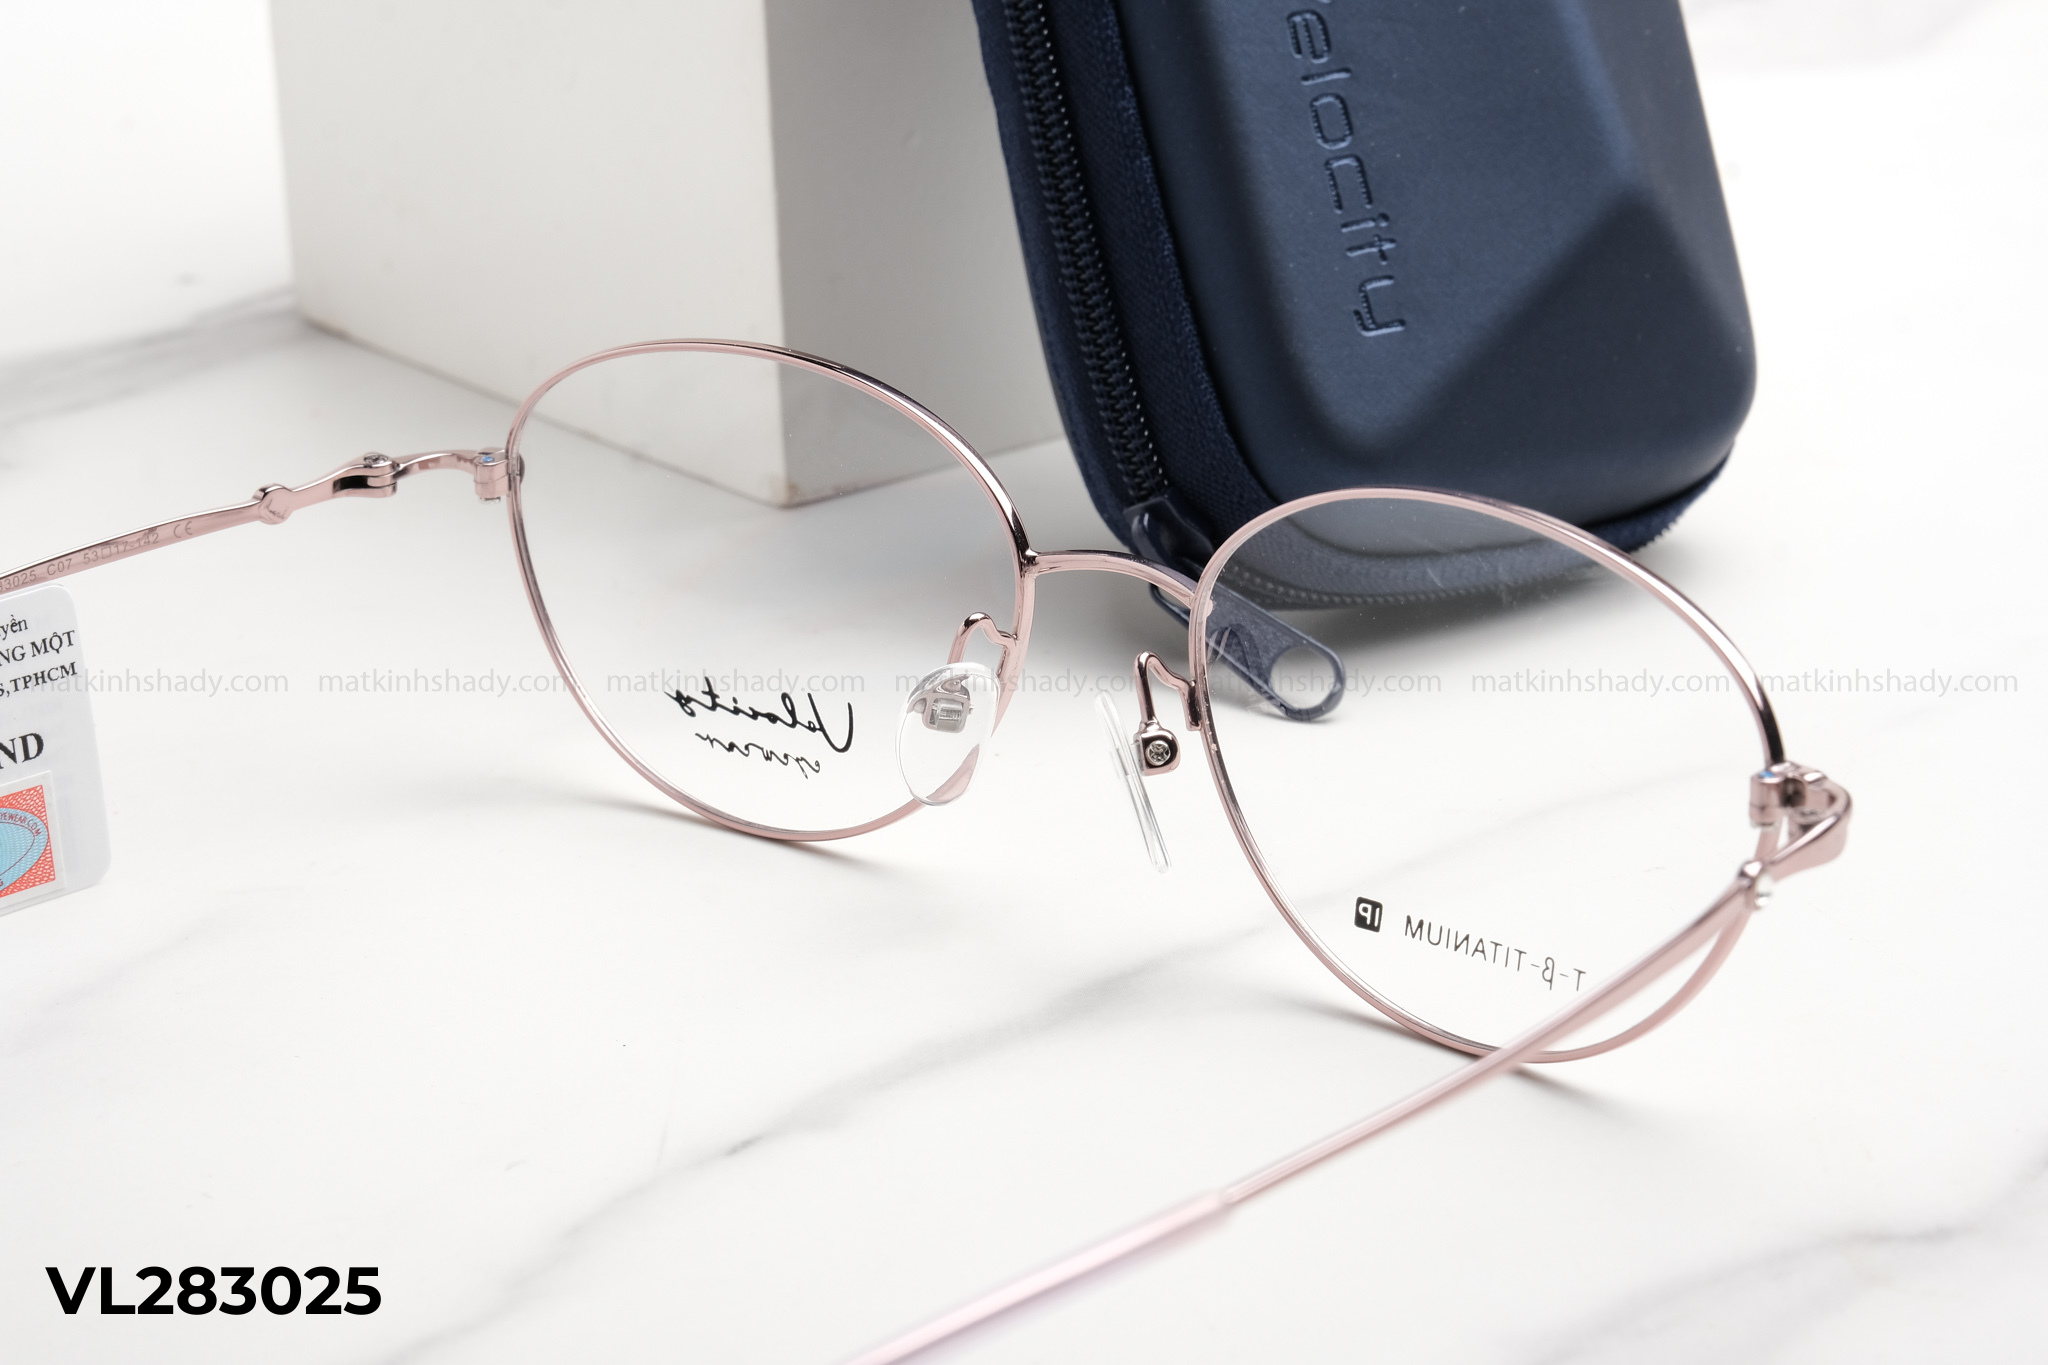  Velocity Eyewear - Glasses -  VL283025 